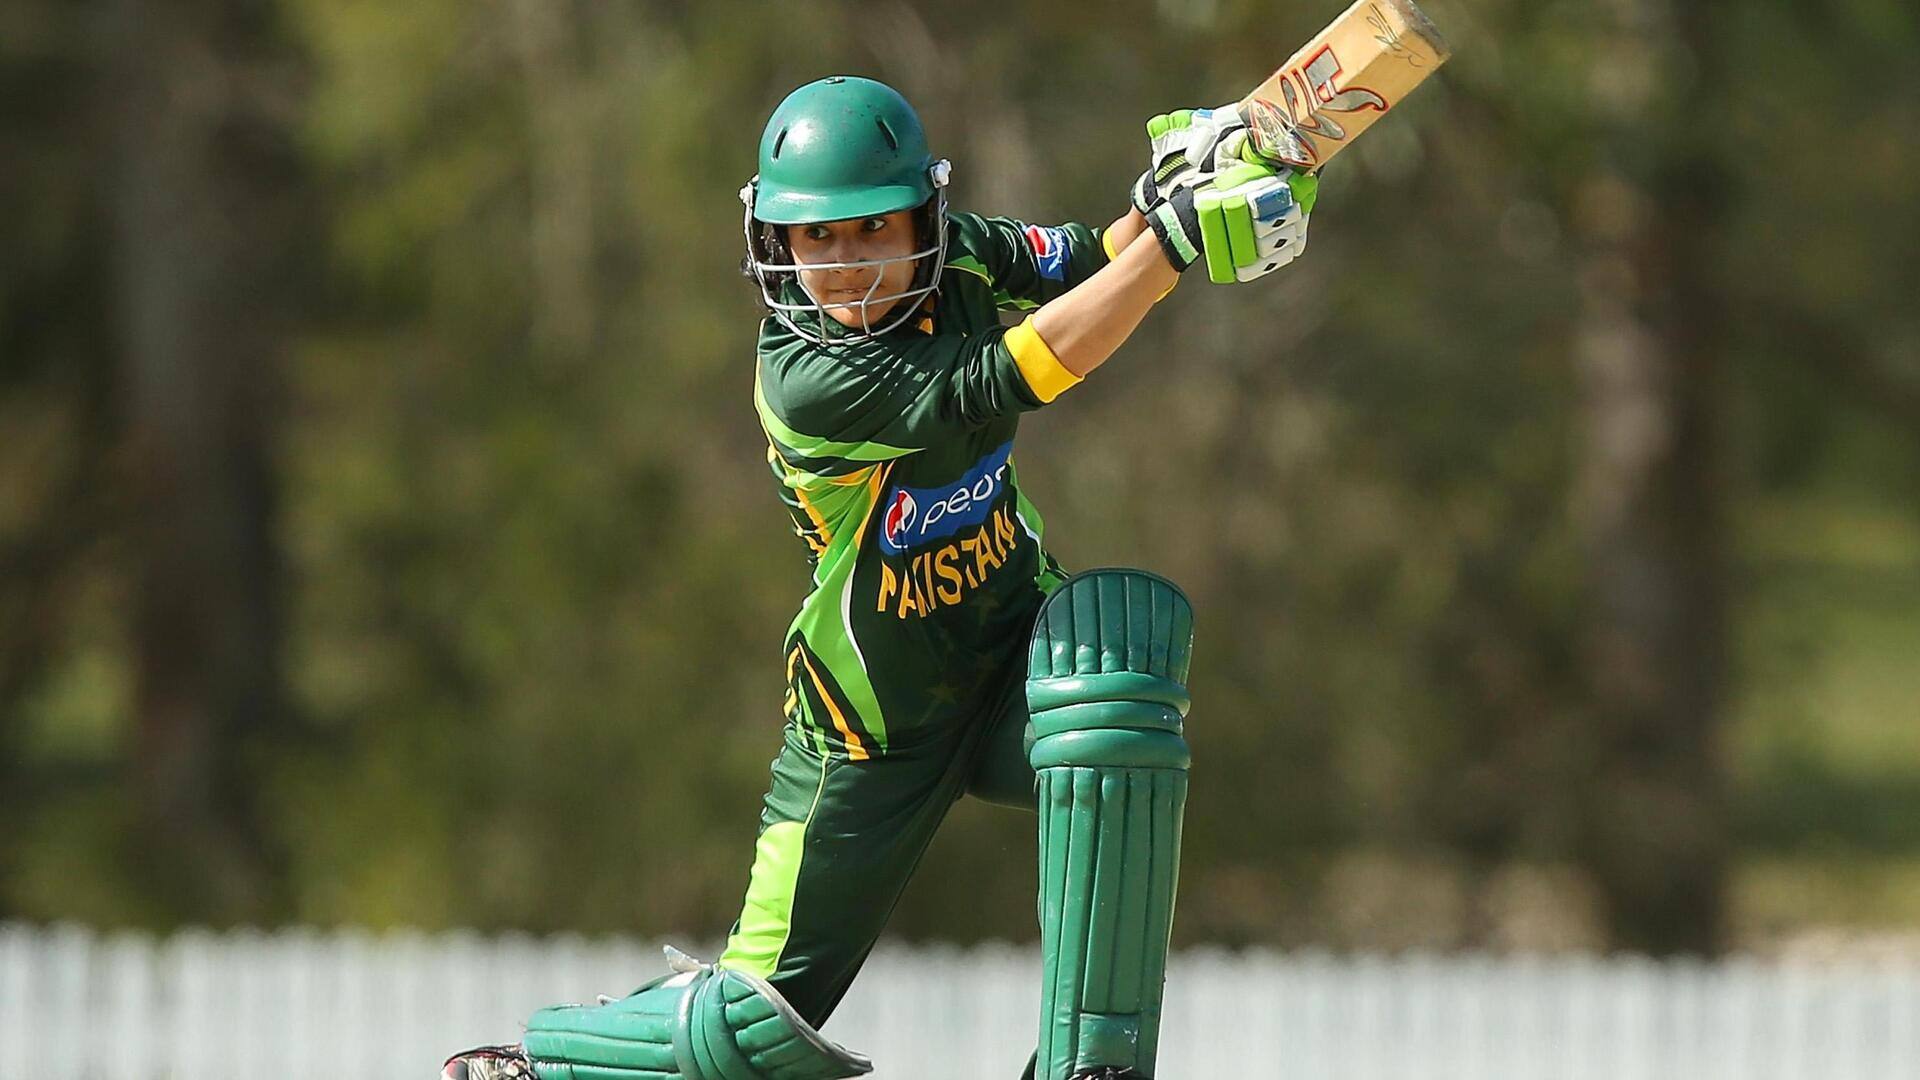 पाकिस्तान की पूर्व कप्तान जावेरिया खान ने लिया अंतरराष्ट्रीय क्रिकेट से संन्यास, जानिए आंकड़े